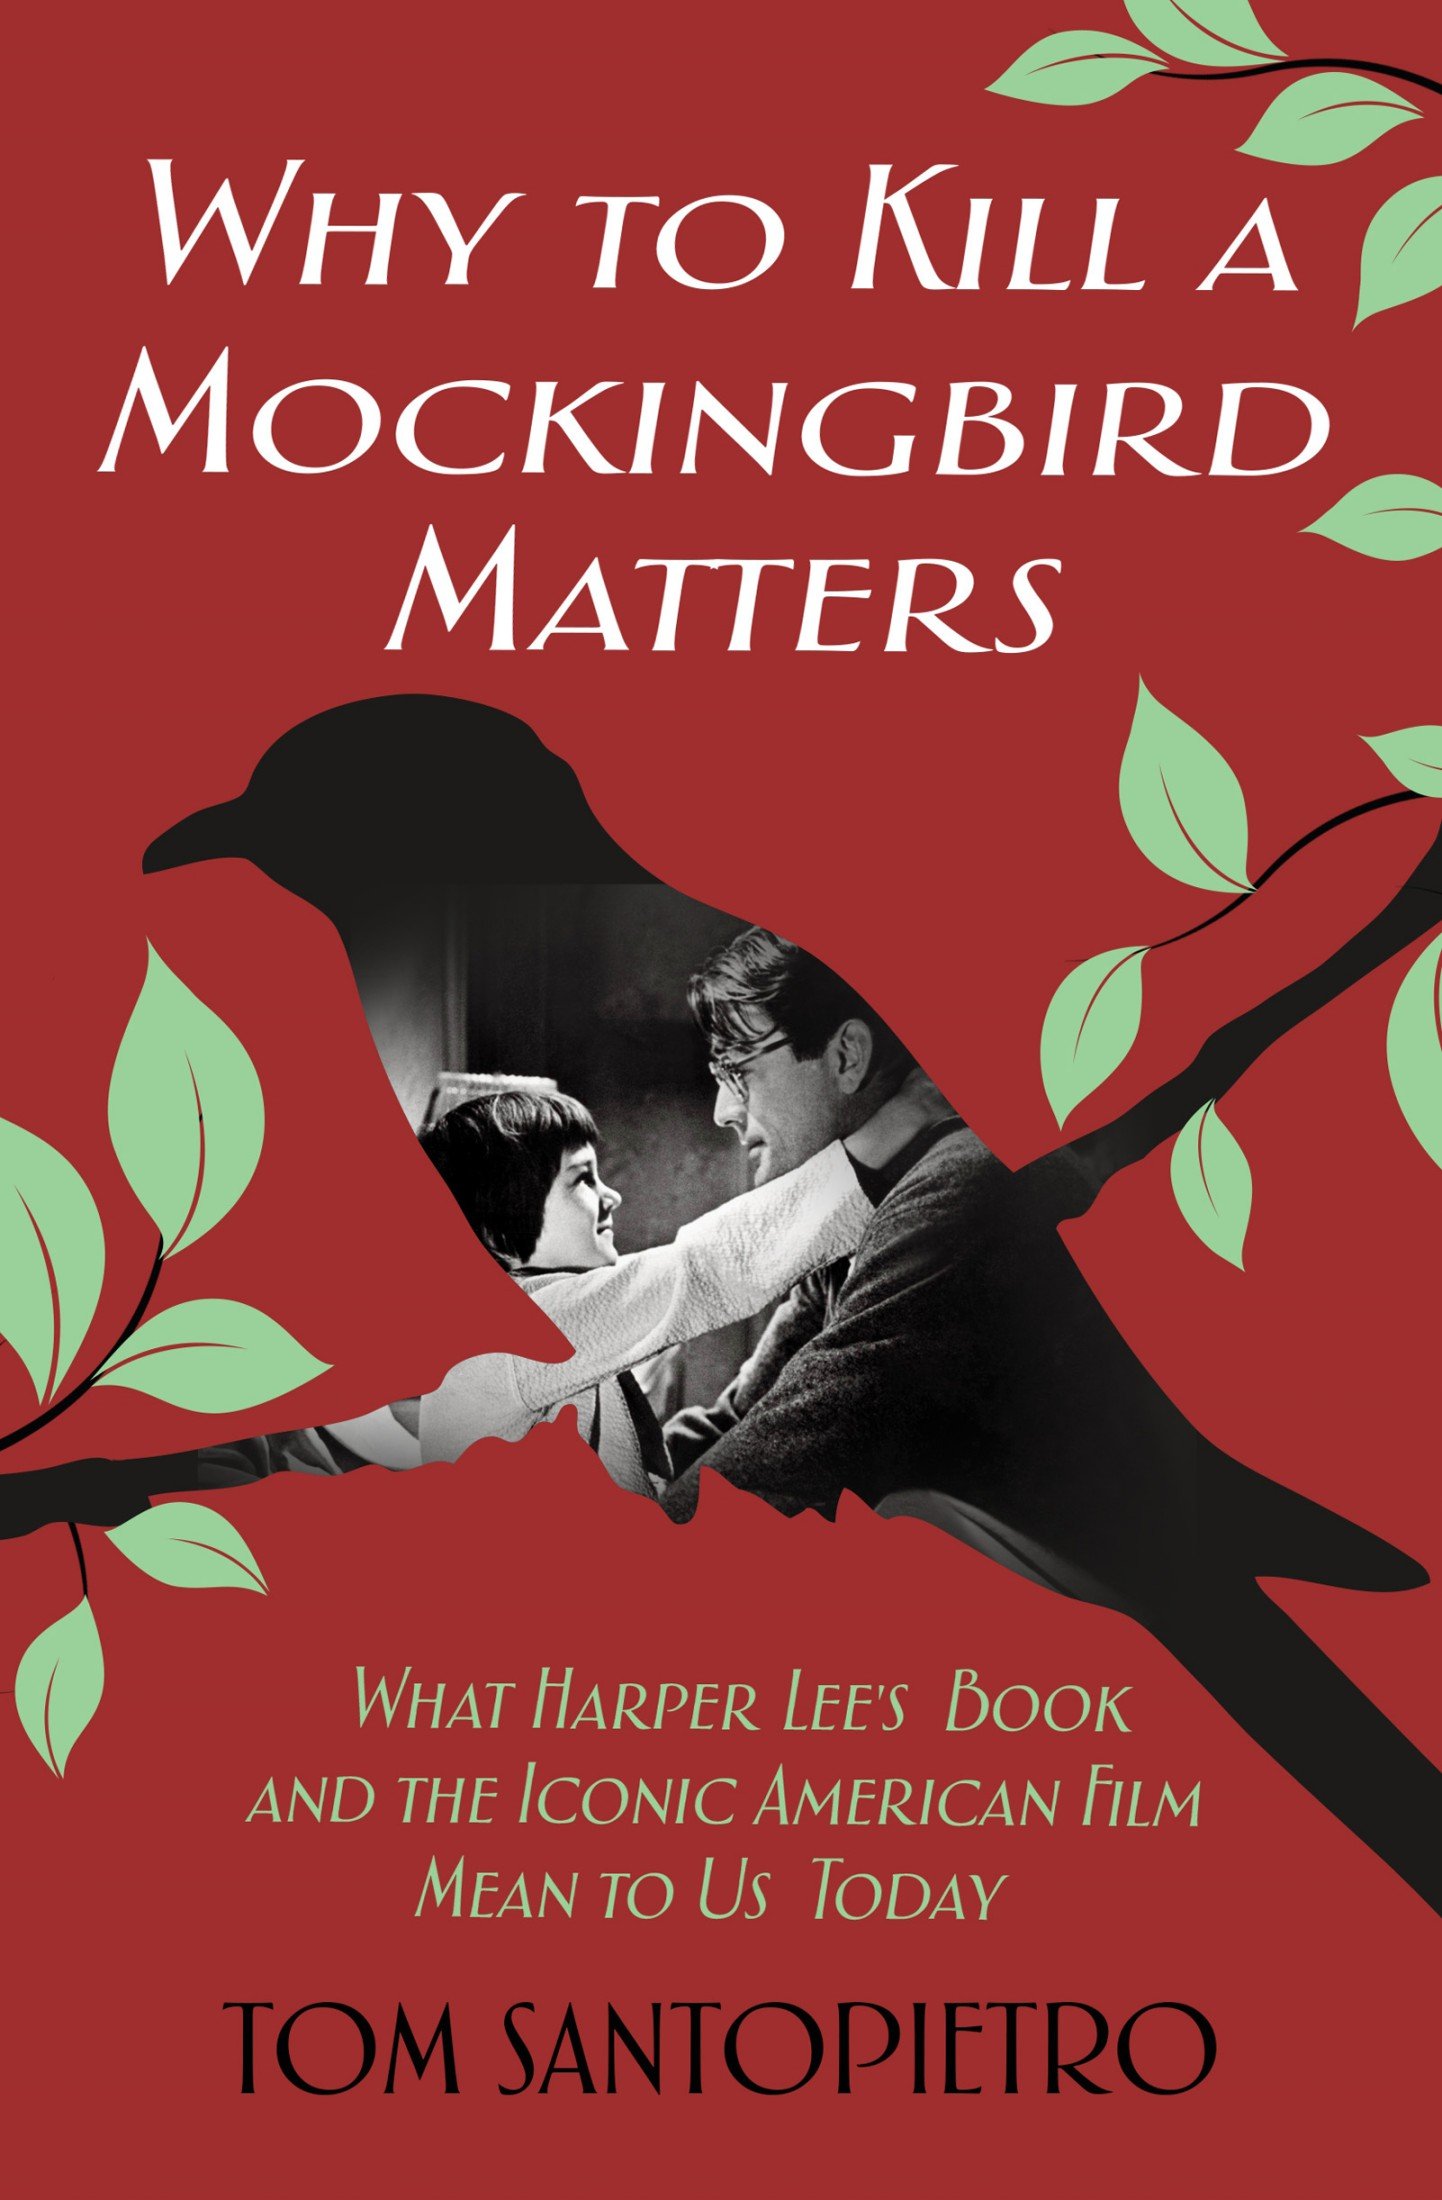 to kill a mockingbird movie vs book essay